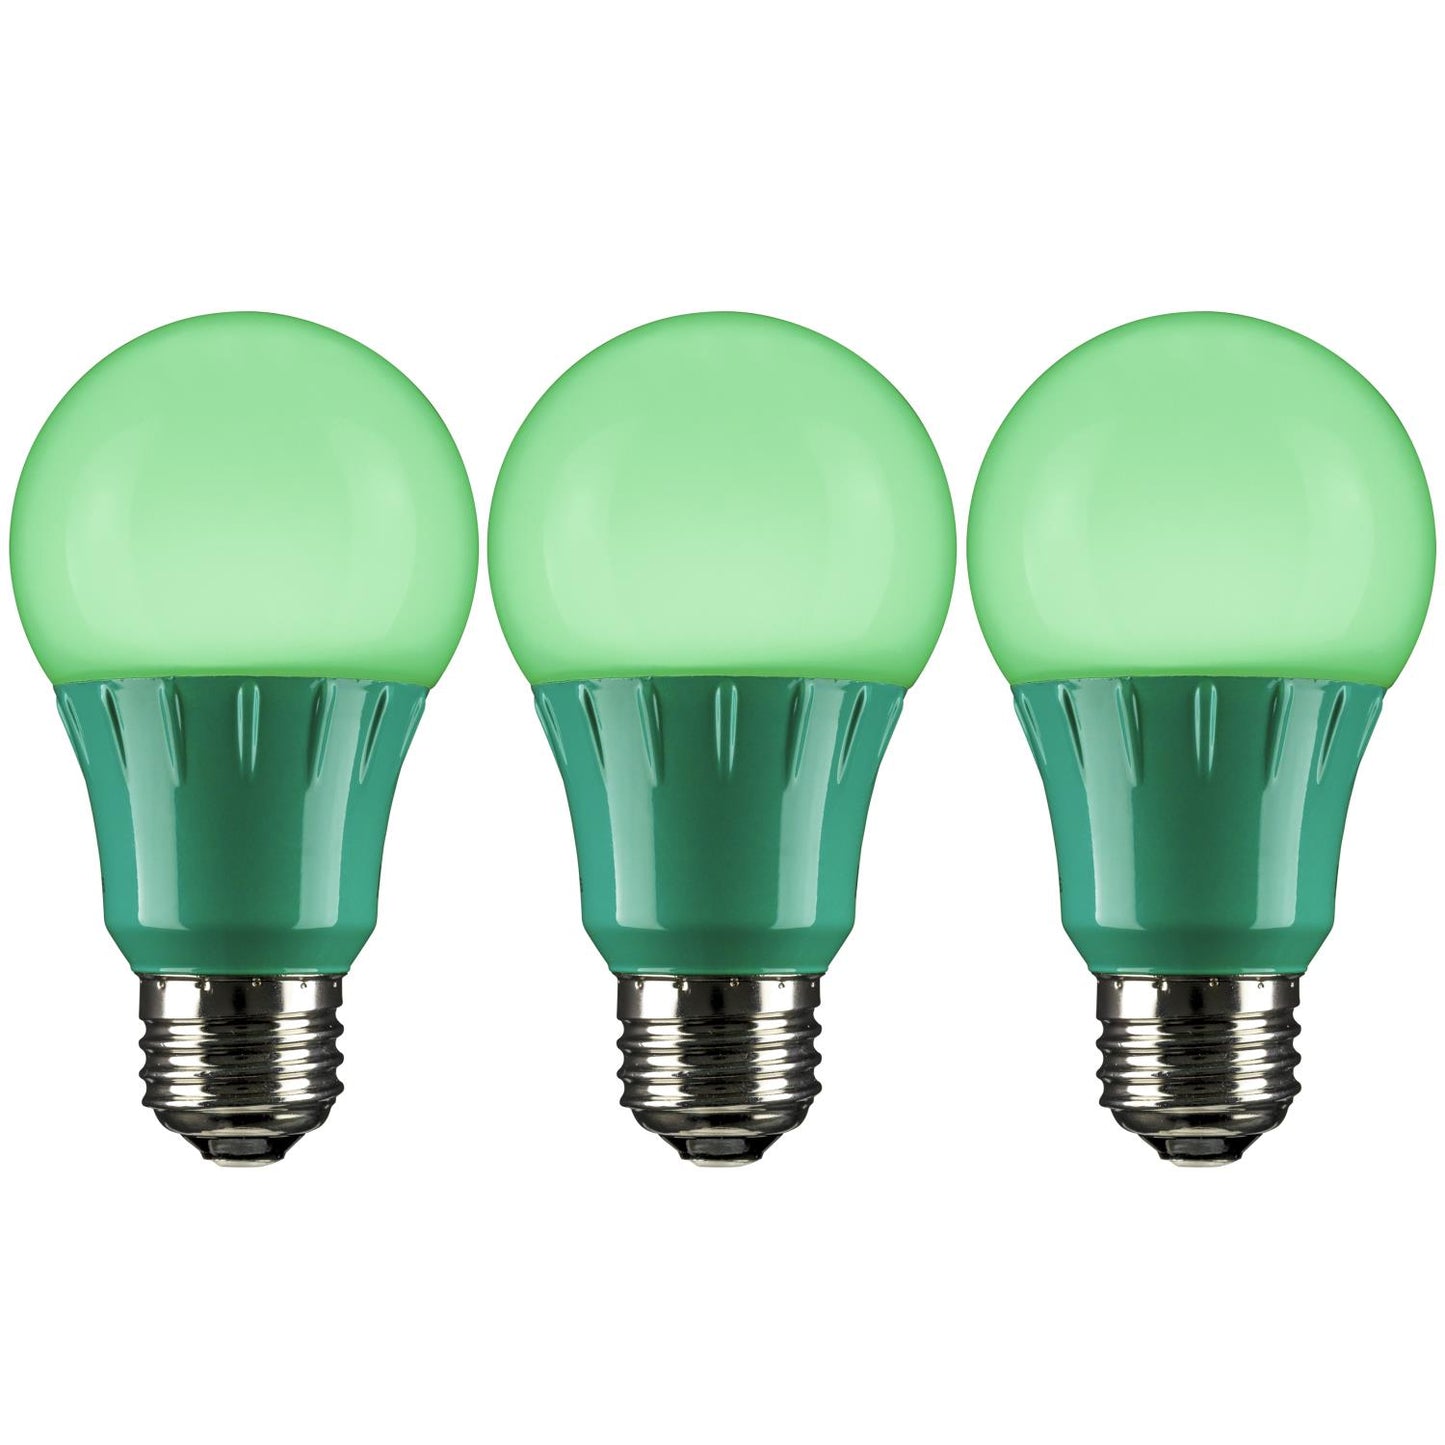 Sunlite 3 Watt A19 Lamp Medium Base Green